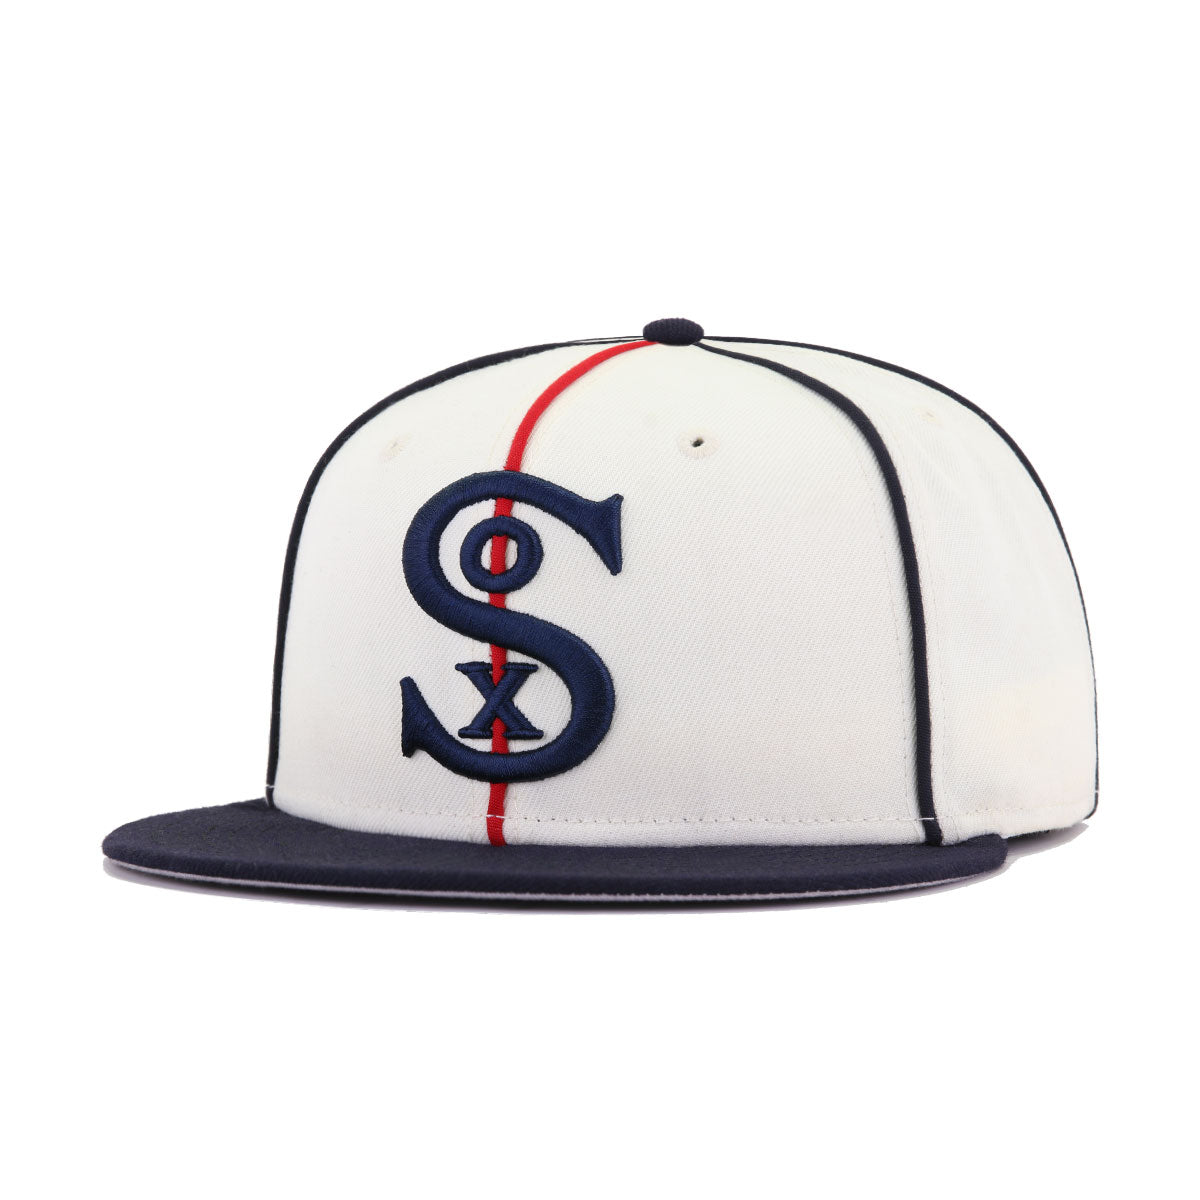 New Era, Accessories, Cincinnati Reds Hat Cooperstown New Era Wool 7 5  59fifty Baseball Ball Cap